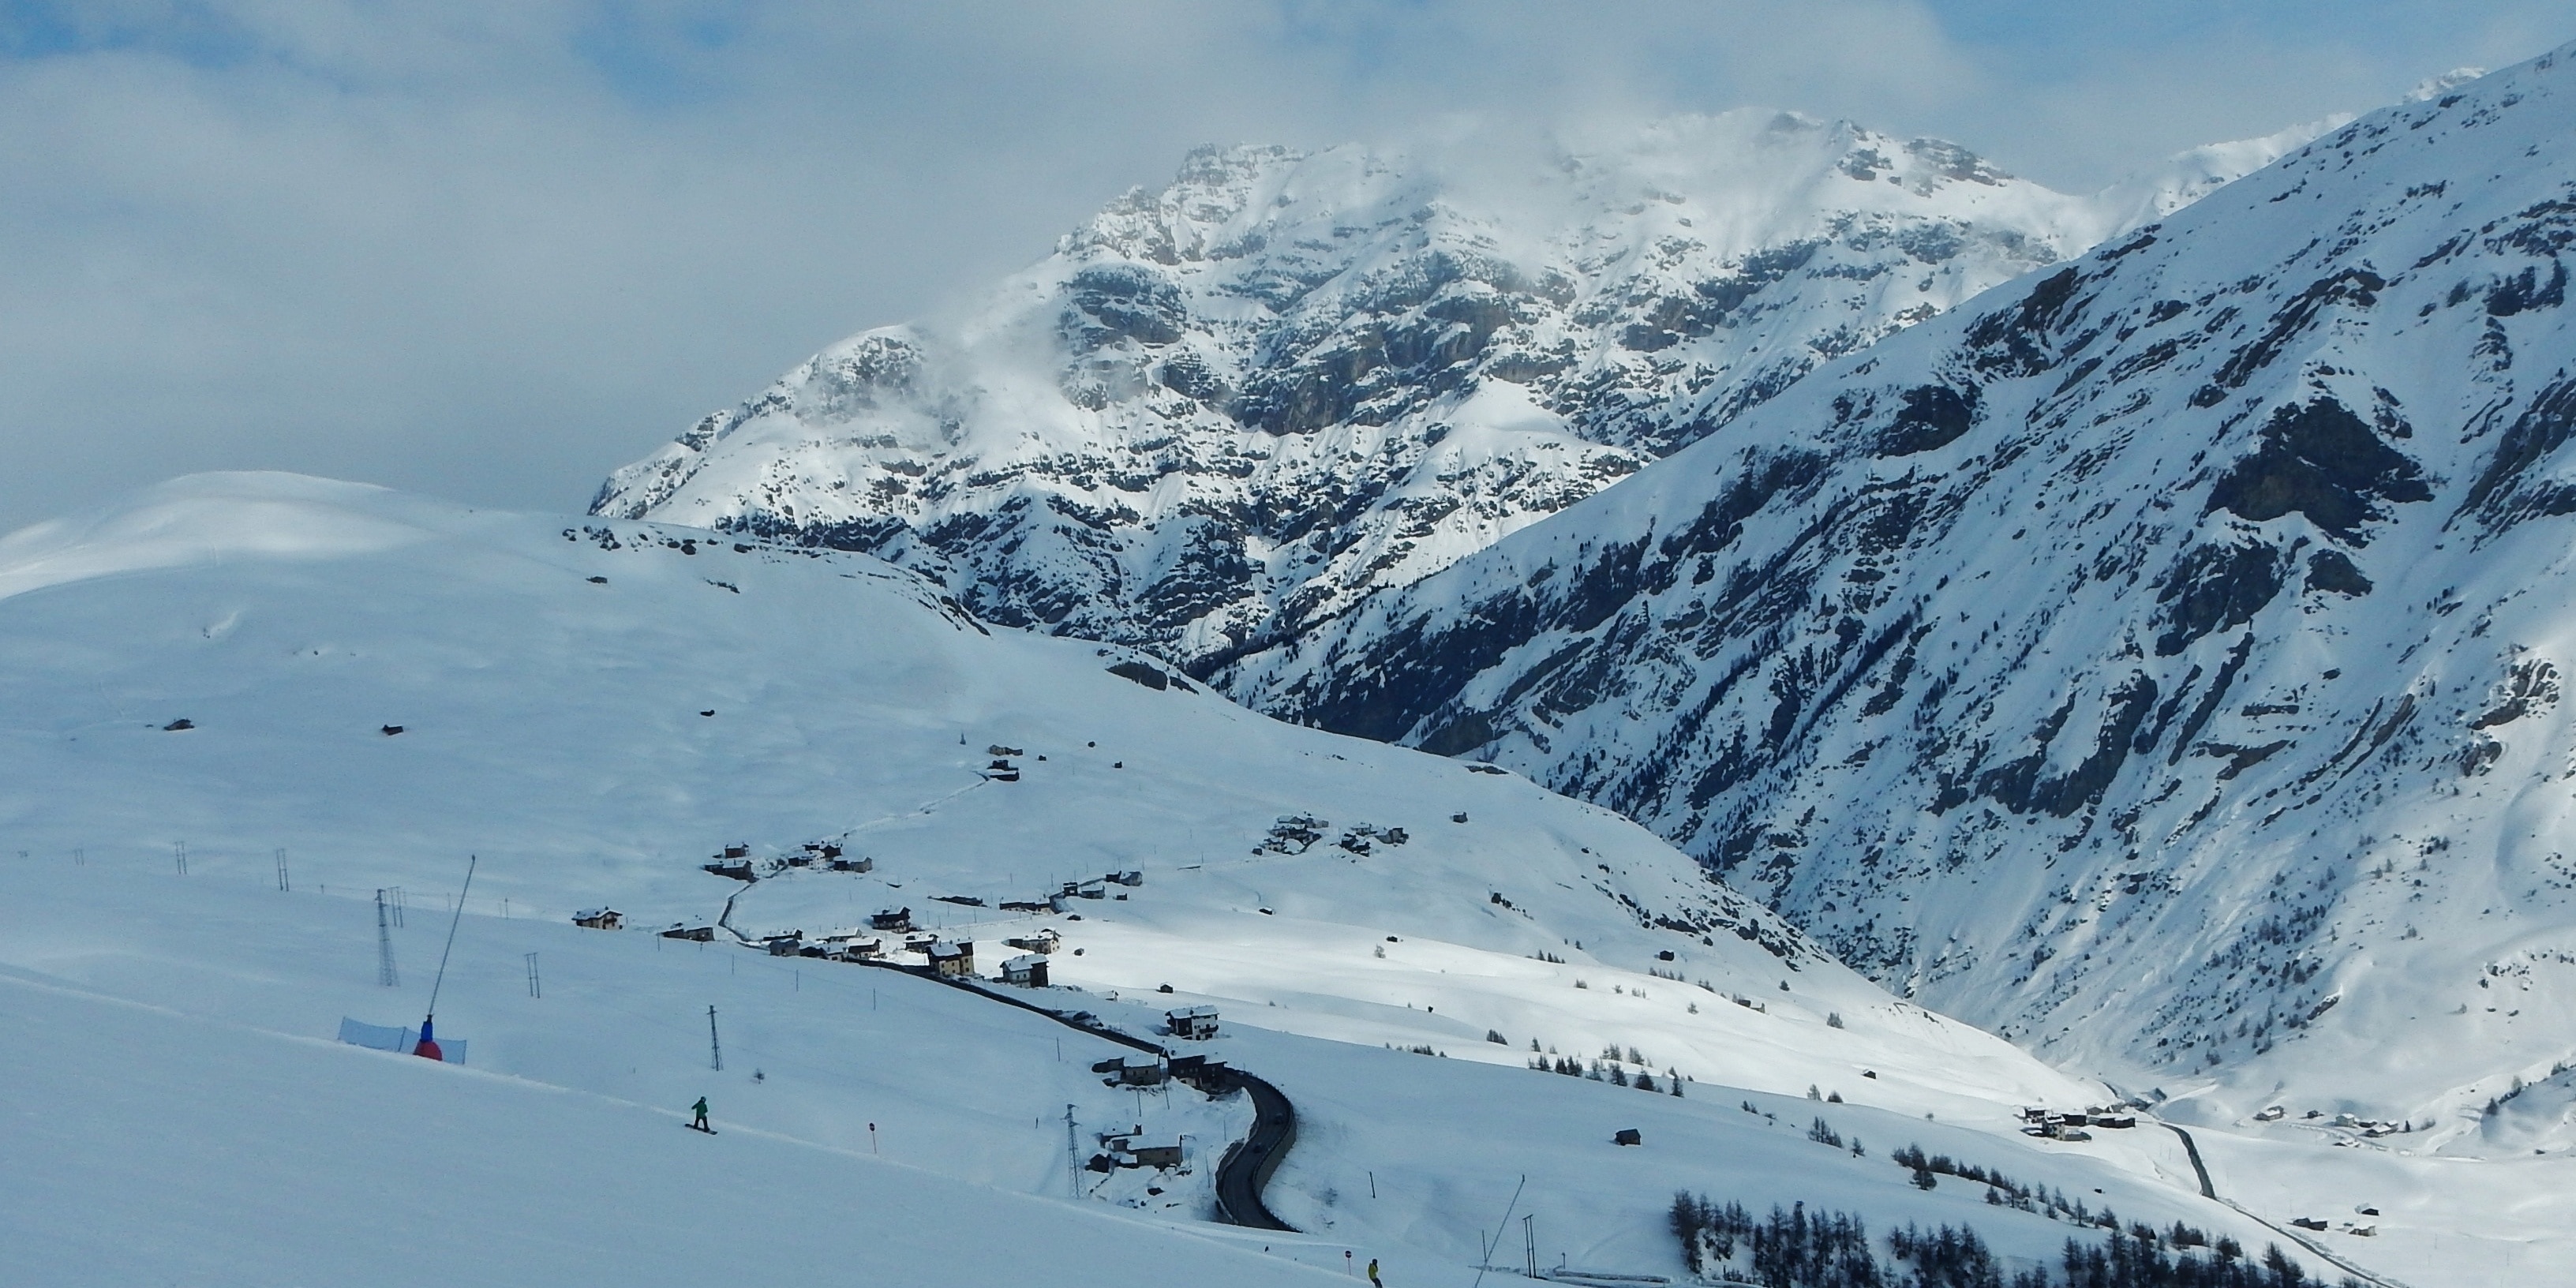 View from Ski Area Mottolino to Passo Eira